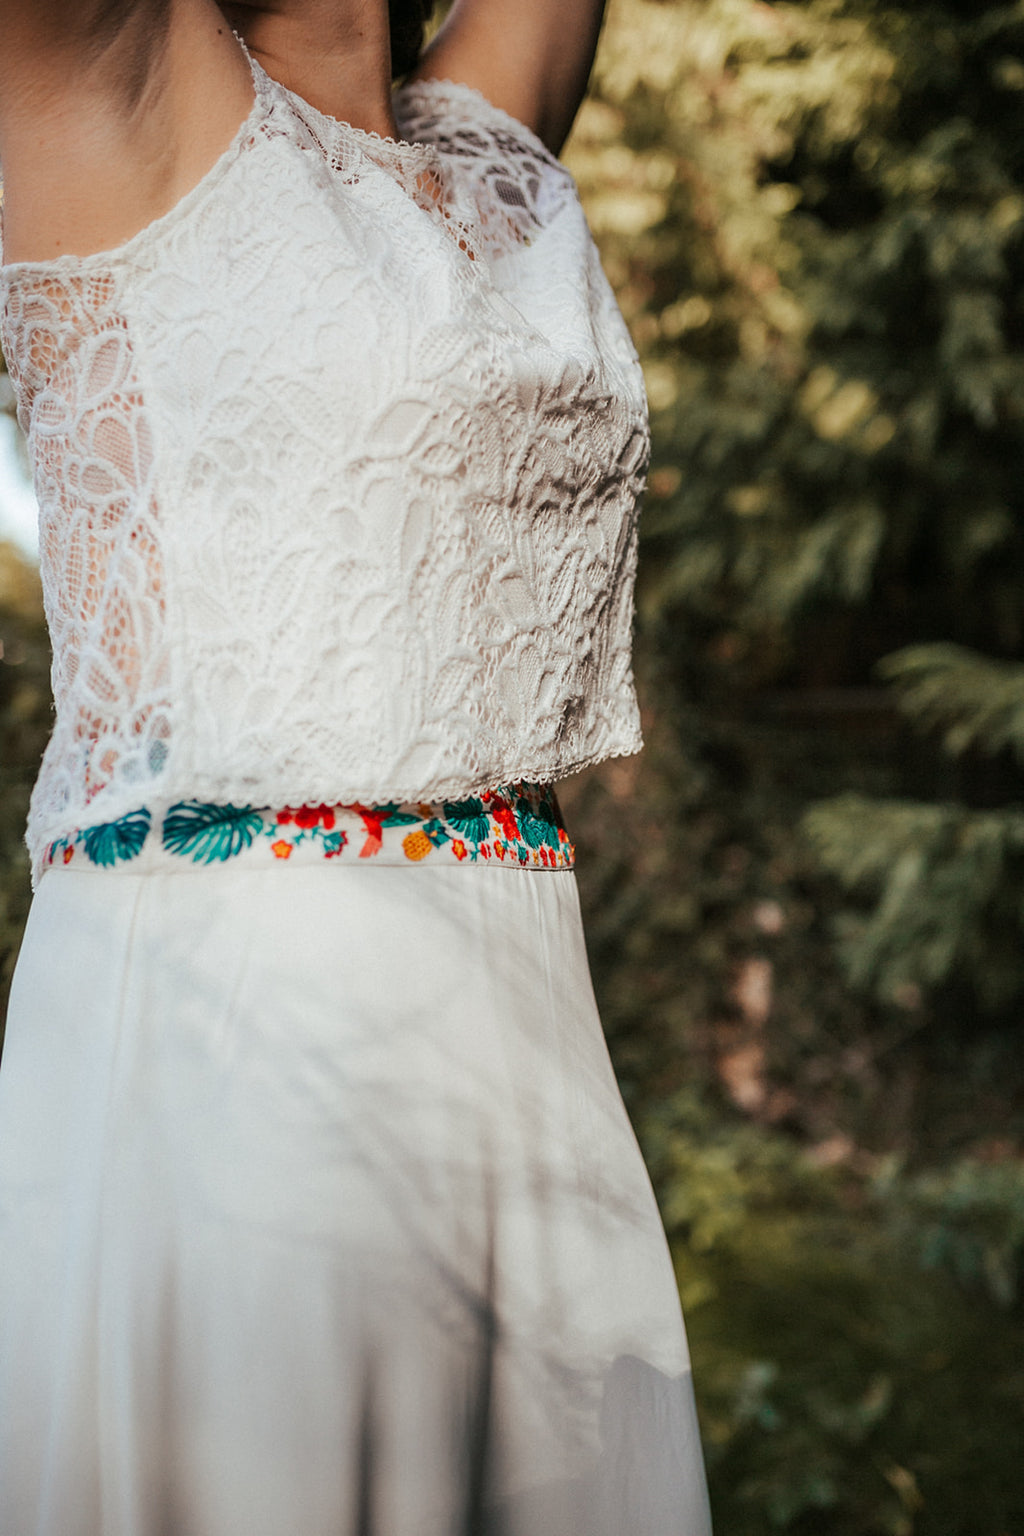 Jupe mariée avec touche de couleur - ceinture brodée - tenue 2 pièce - robe mariage